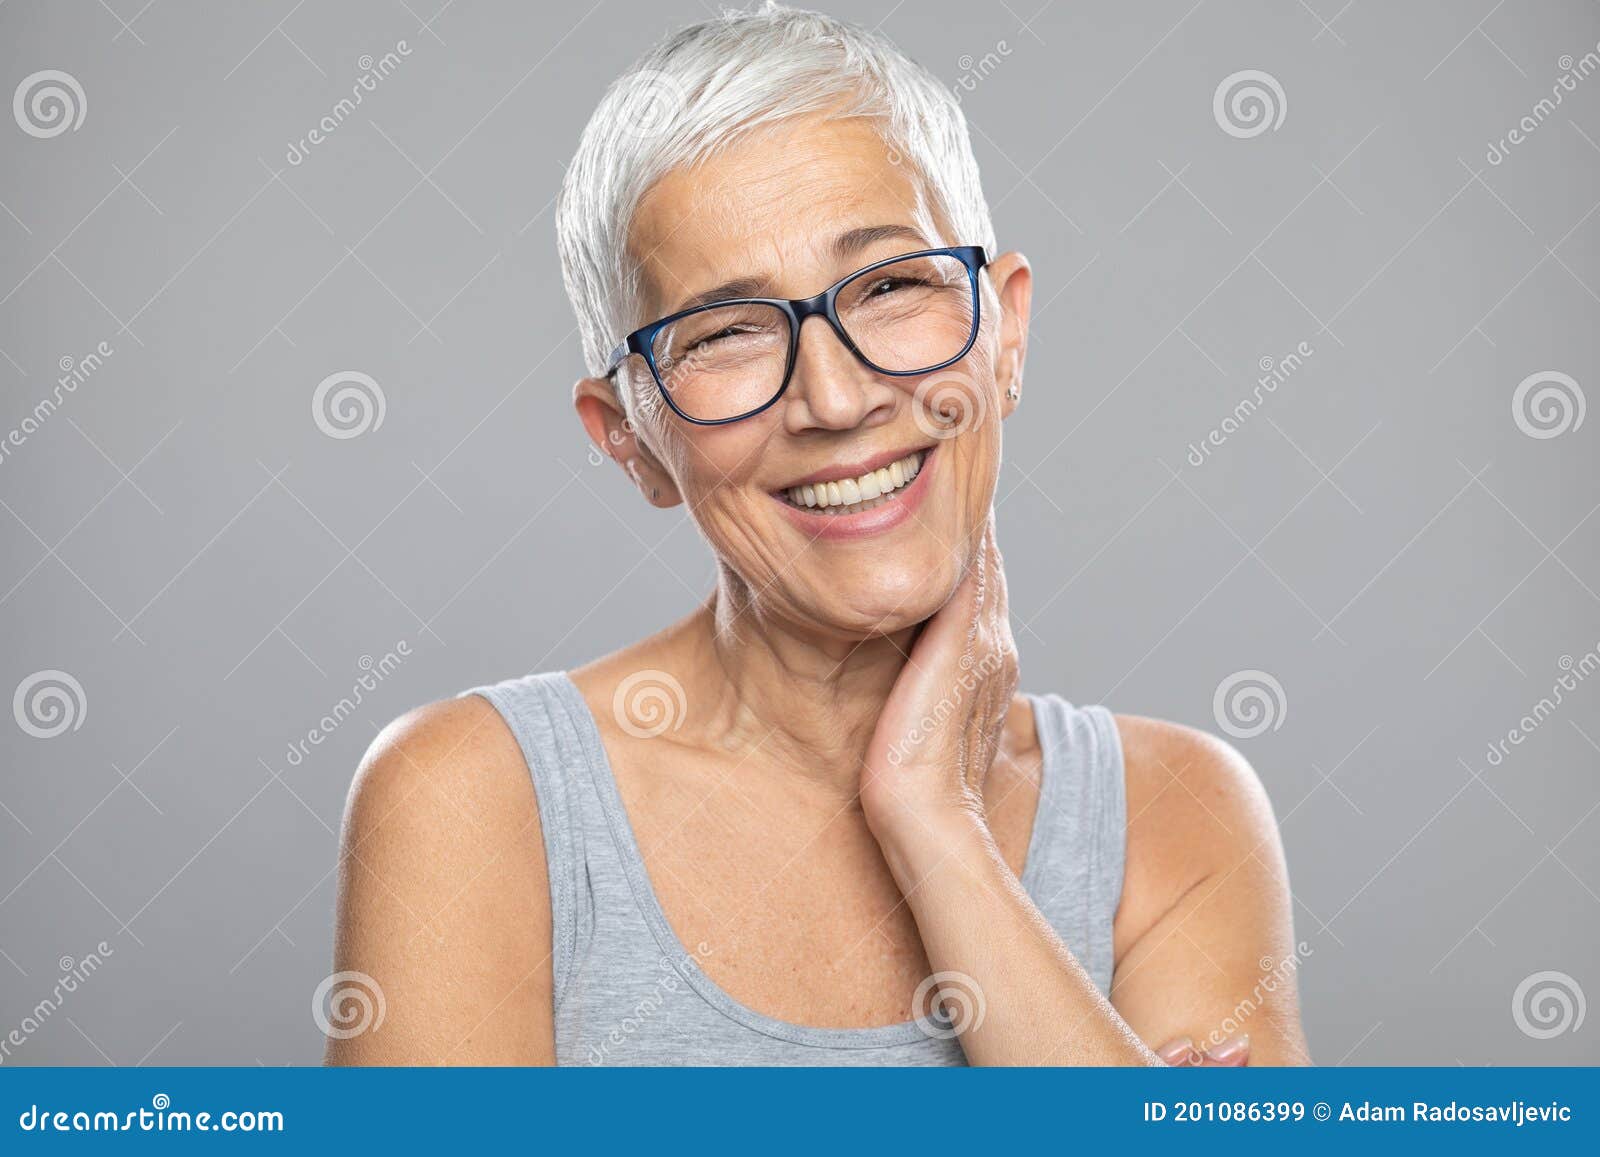 Glimlachende Oudere Vrouw Met Grijs Haar En Een Bril Die Voor De Achtergrond Poseren Stock Afbeelding - Image haar, stellen: